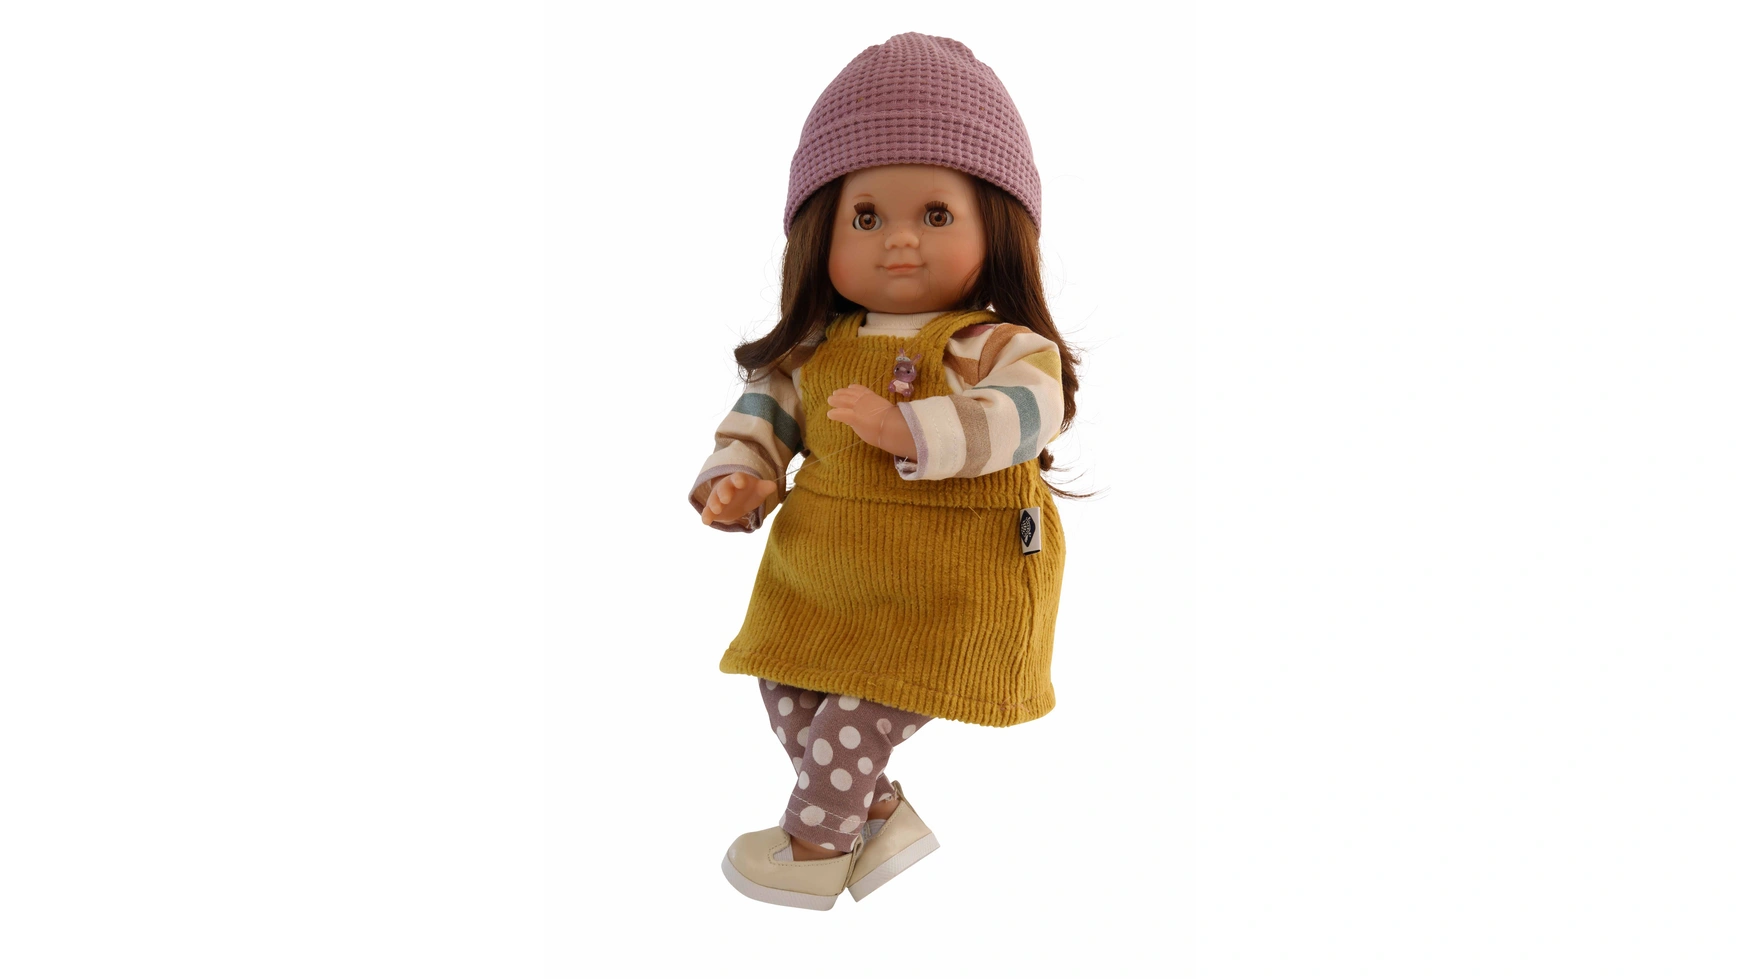 Schildkroet-Puppen Кукла Шлюммерле 32 см каштановые волосы, карие сонные глаза, яркая зимняя одежда